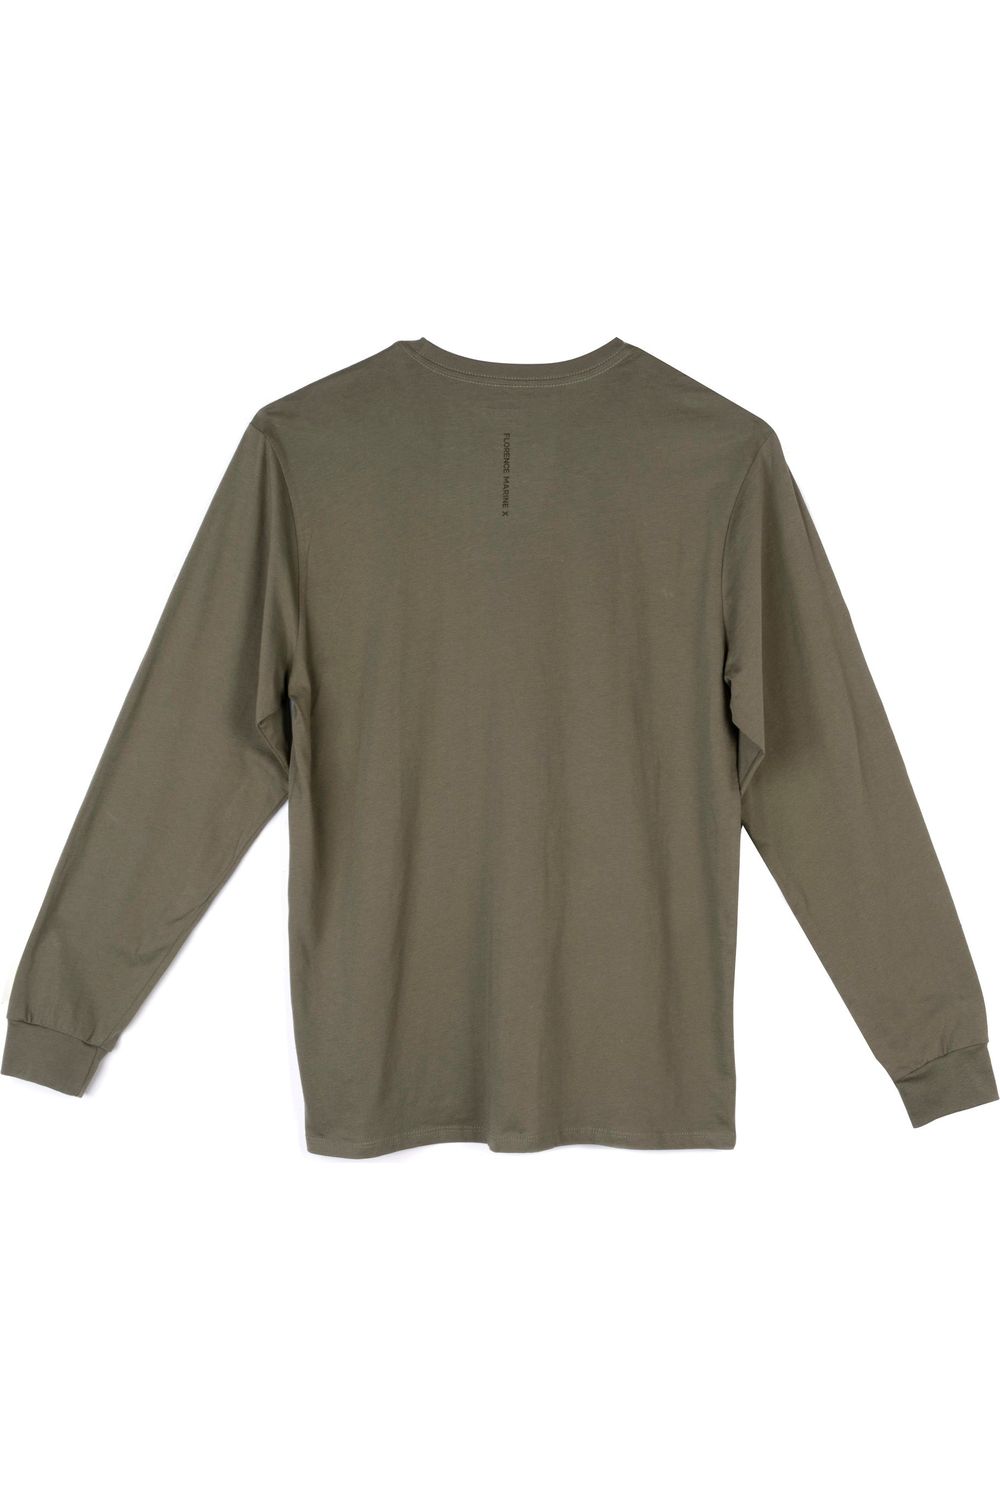 Florence Marine X Burgee Long Sleeve T-Shirt Burnt Olive